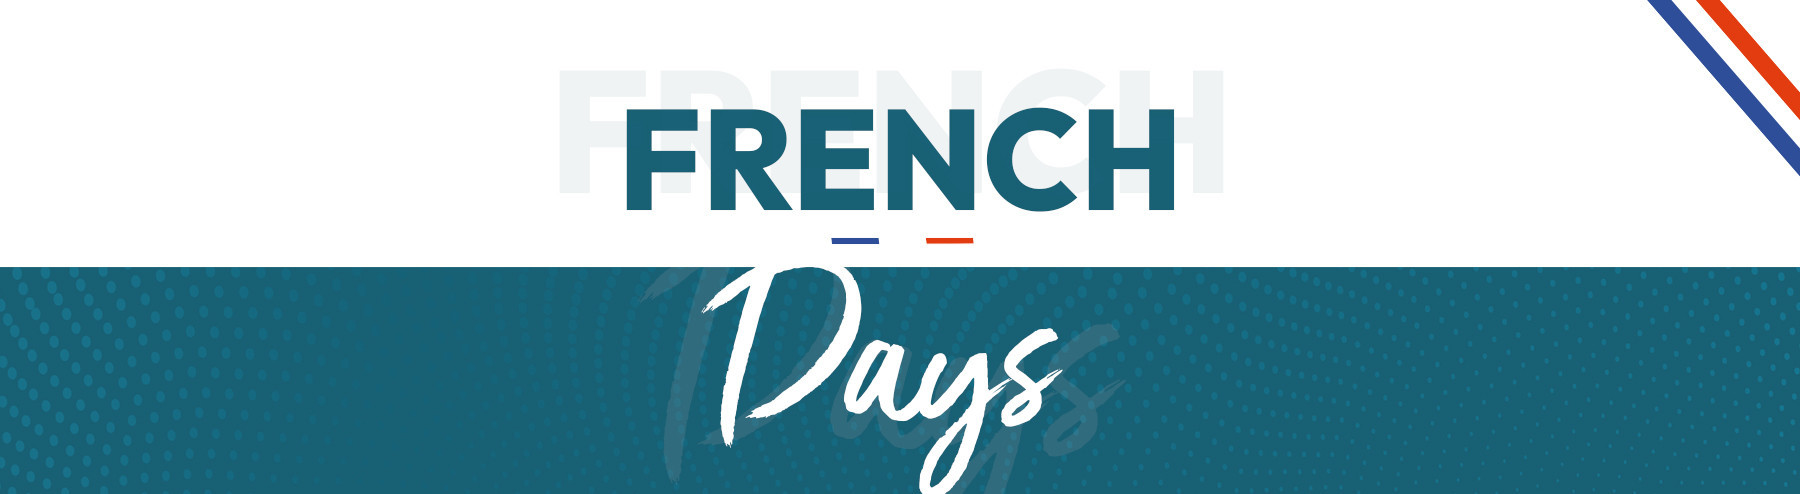 French Days｜Sportfood Center